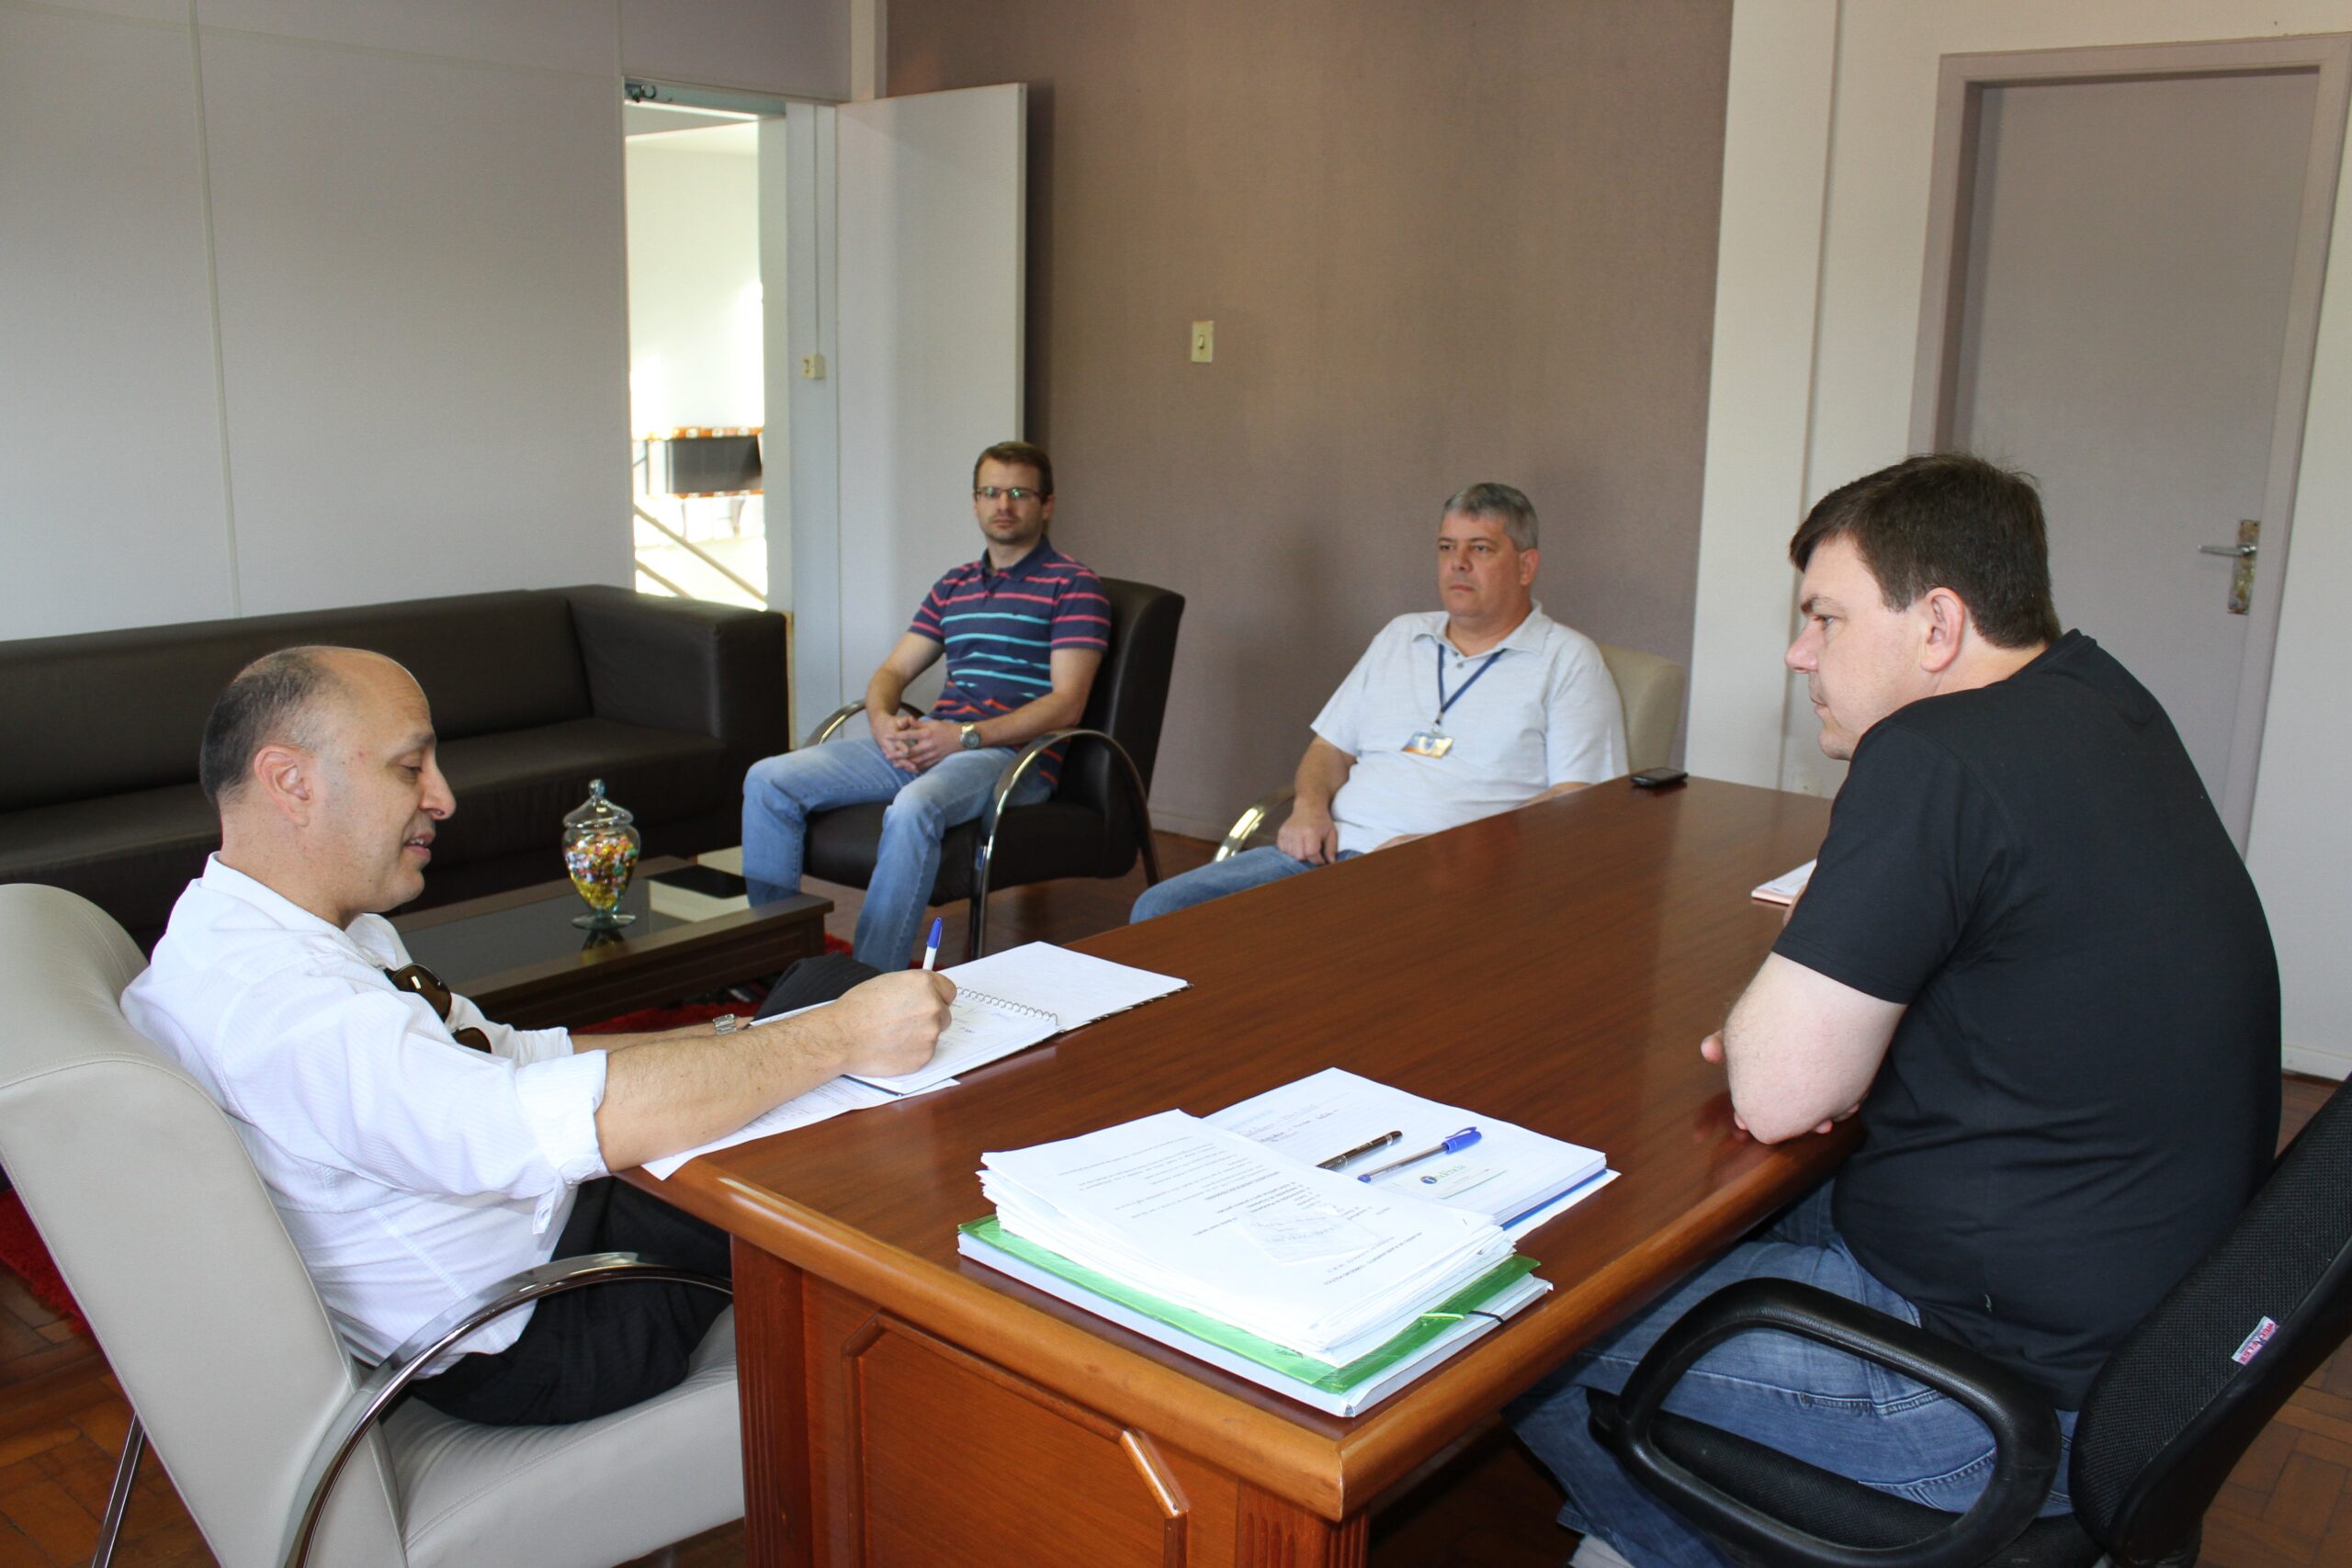 Representantes da Caixa estiveram reunidos com o prefeito Daniel Kothe e equipe de administração para definir detalhes da liberação do FGTS